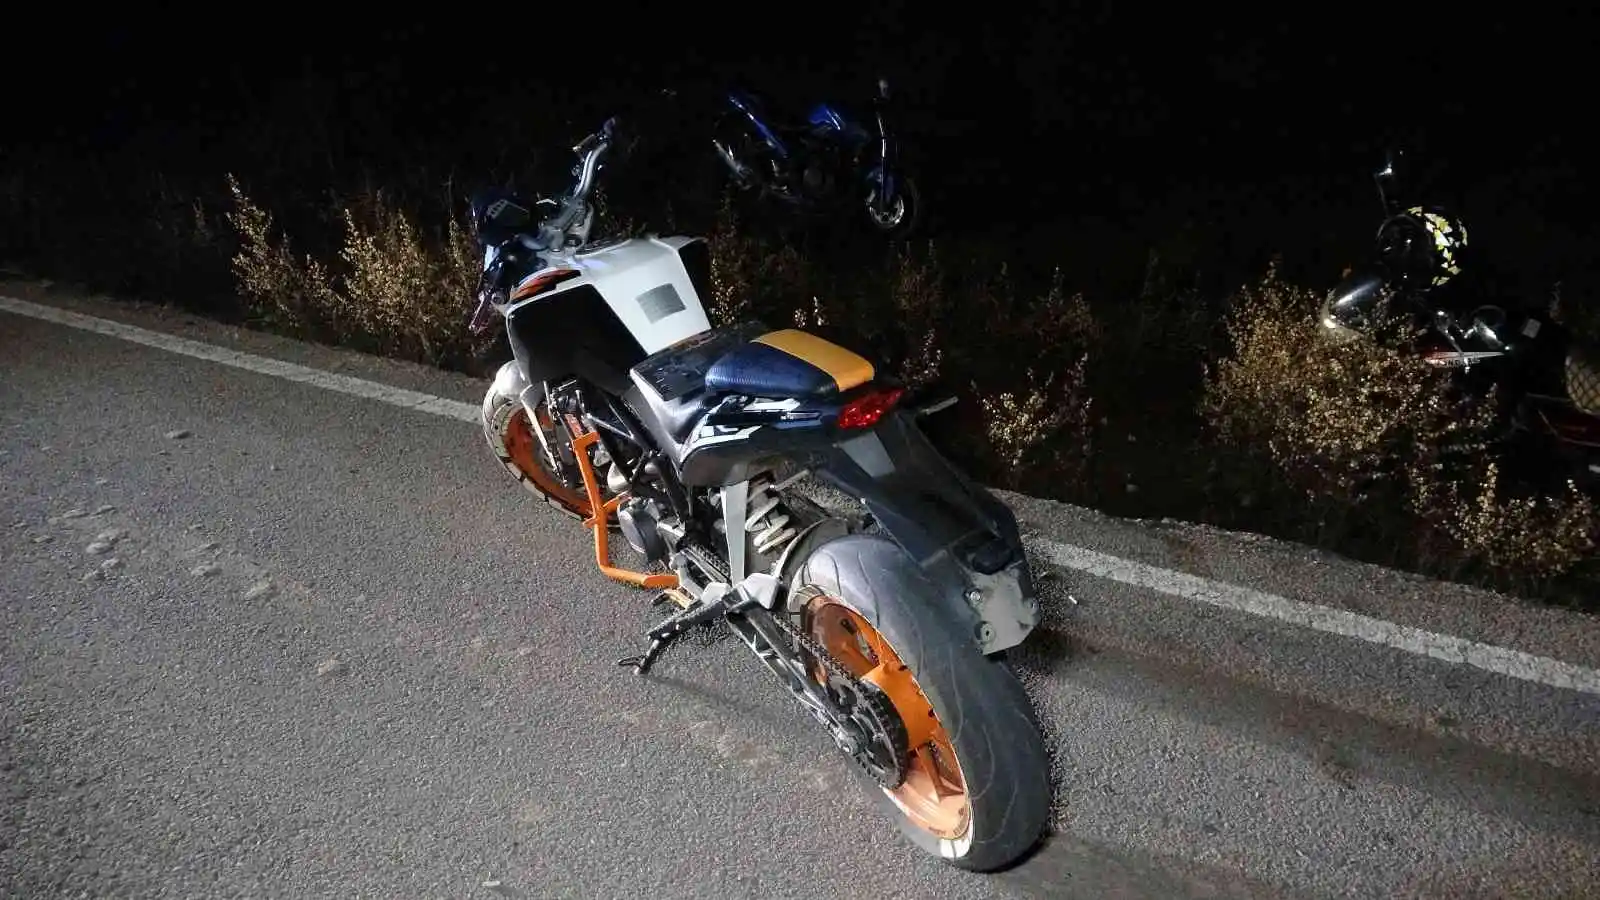 Kocaeli’de iki motosiklet çarpıştı: 4 yaralı
